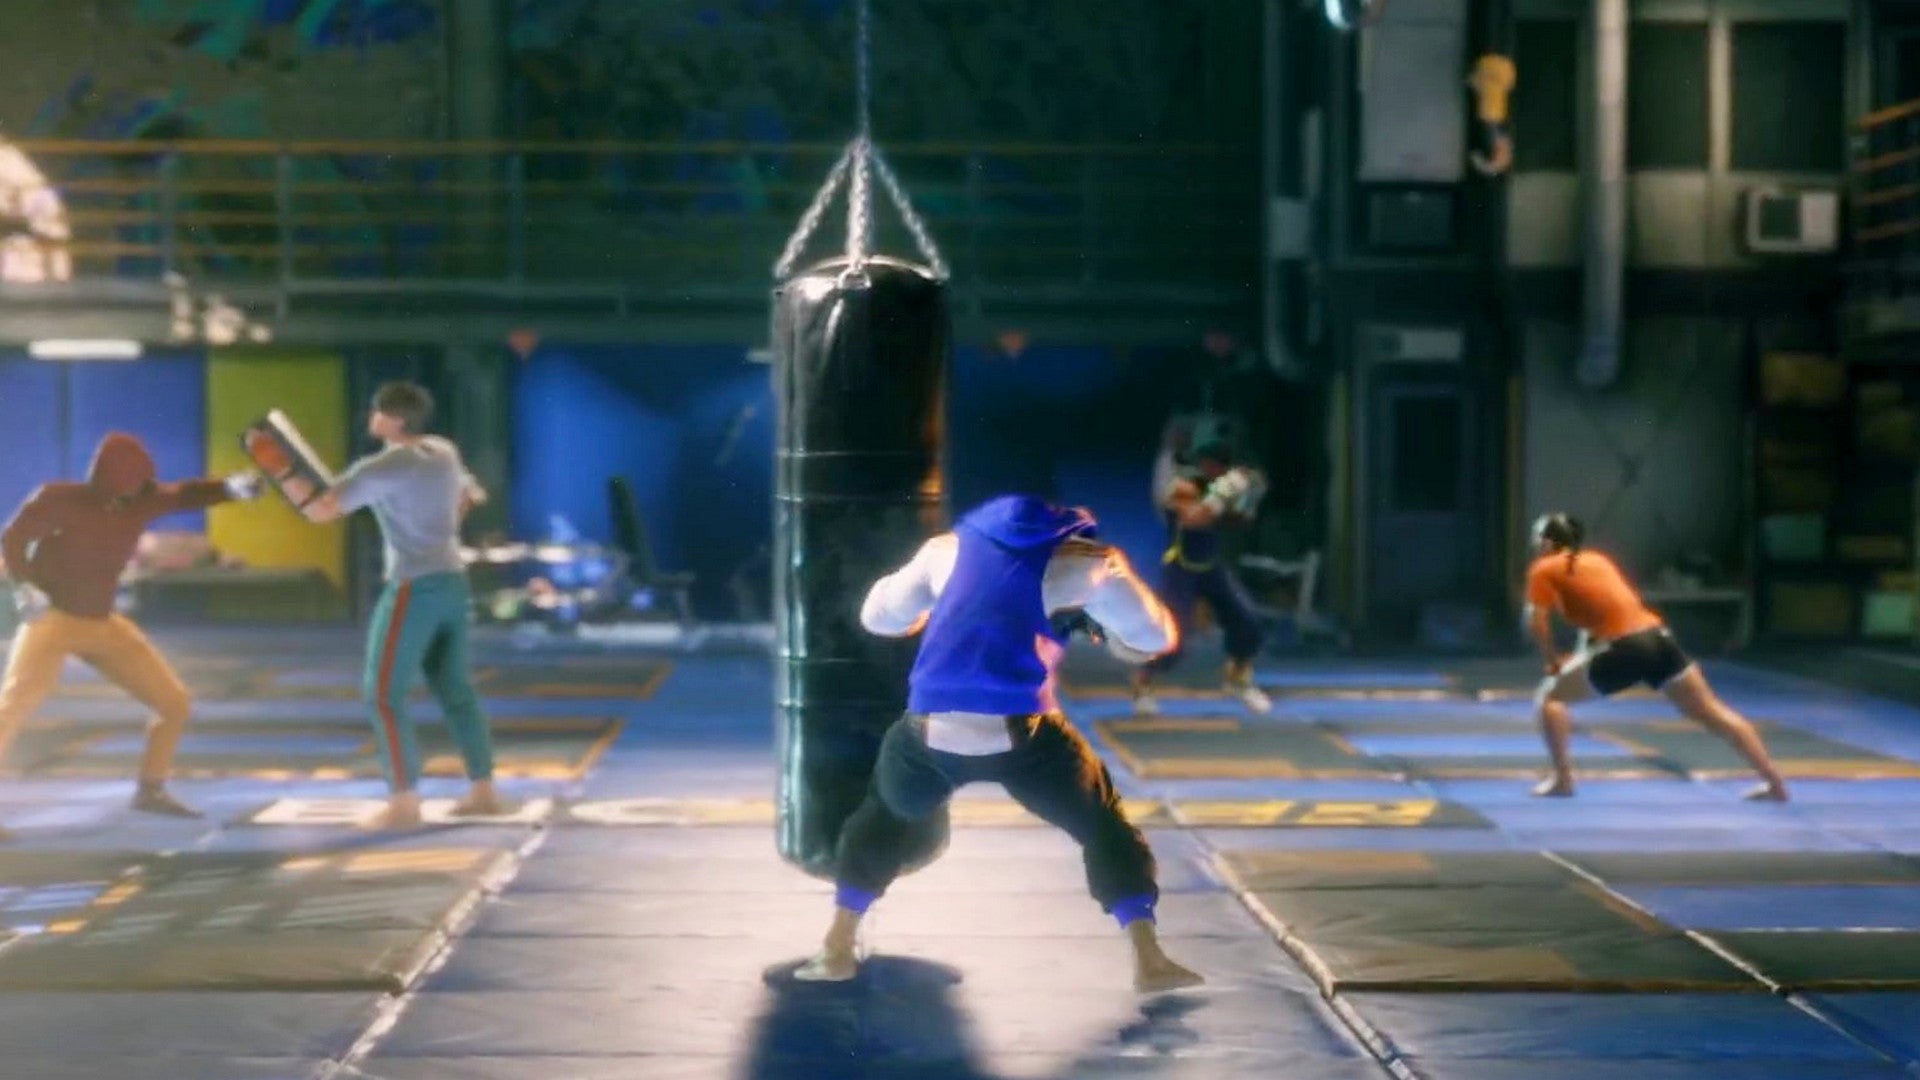 Bilder zu Street Fighter 6: Erscheint 2023, Capcom zeigt ersten Trailer